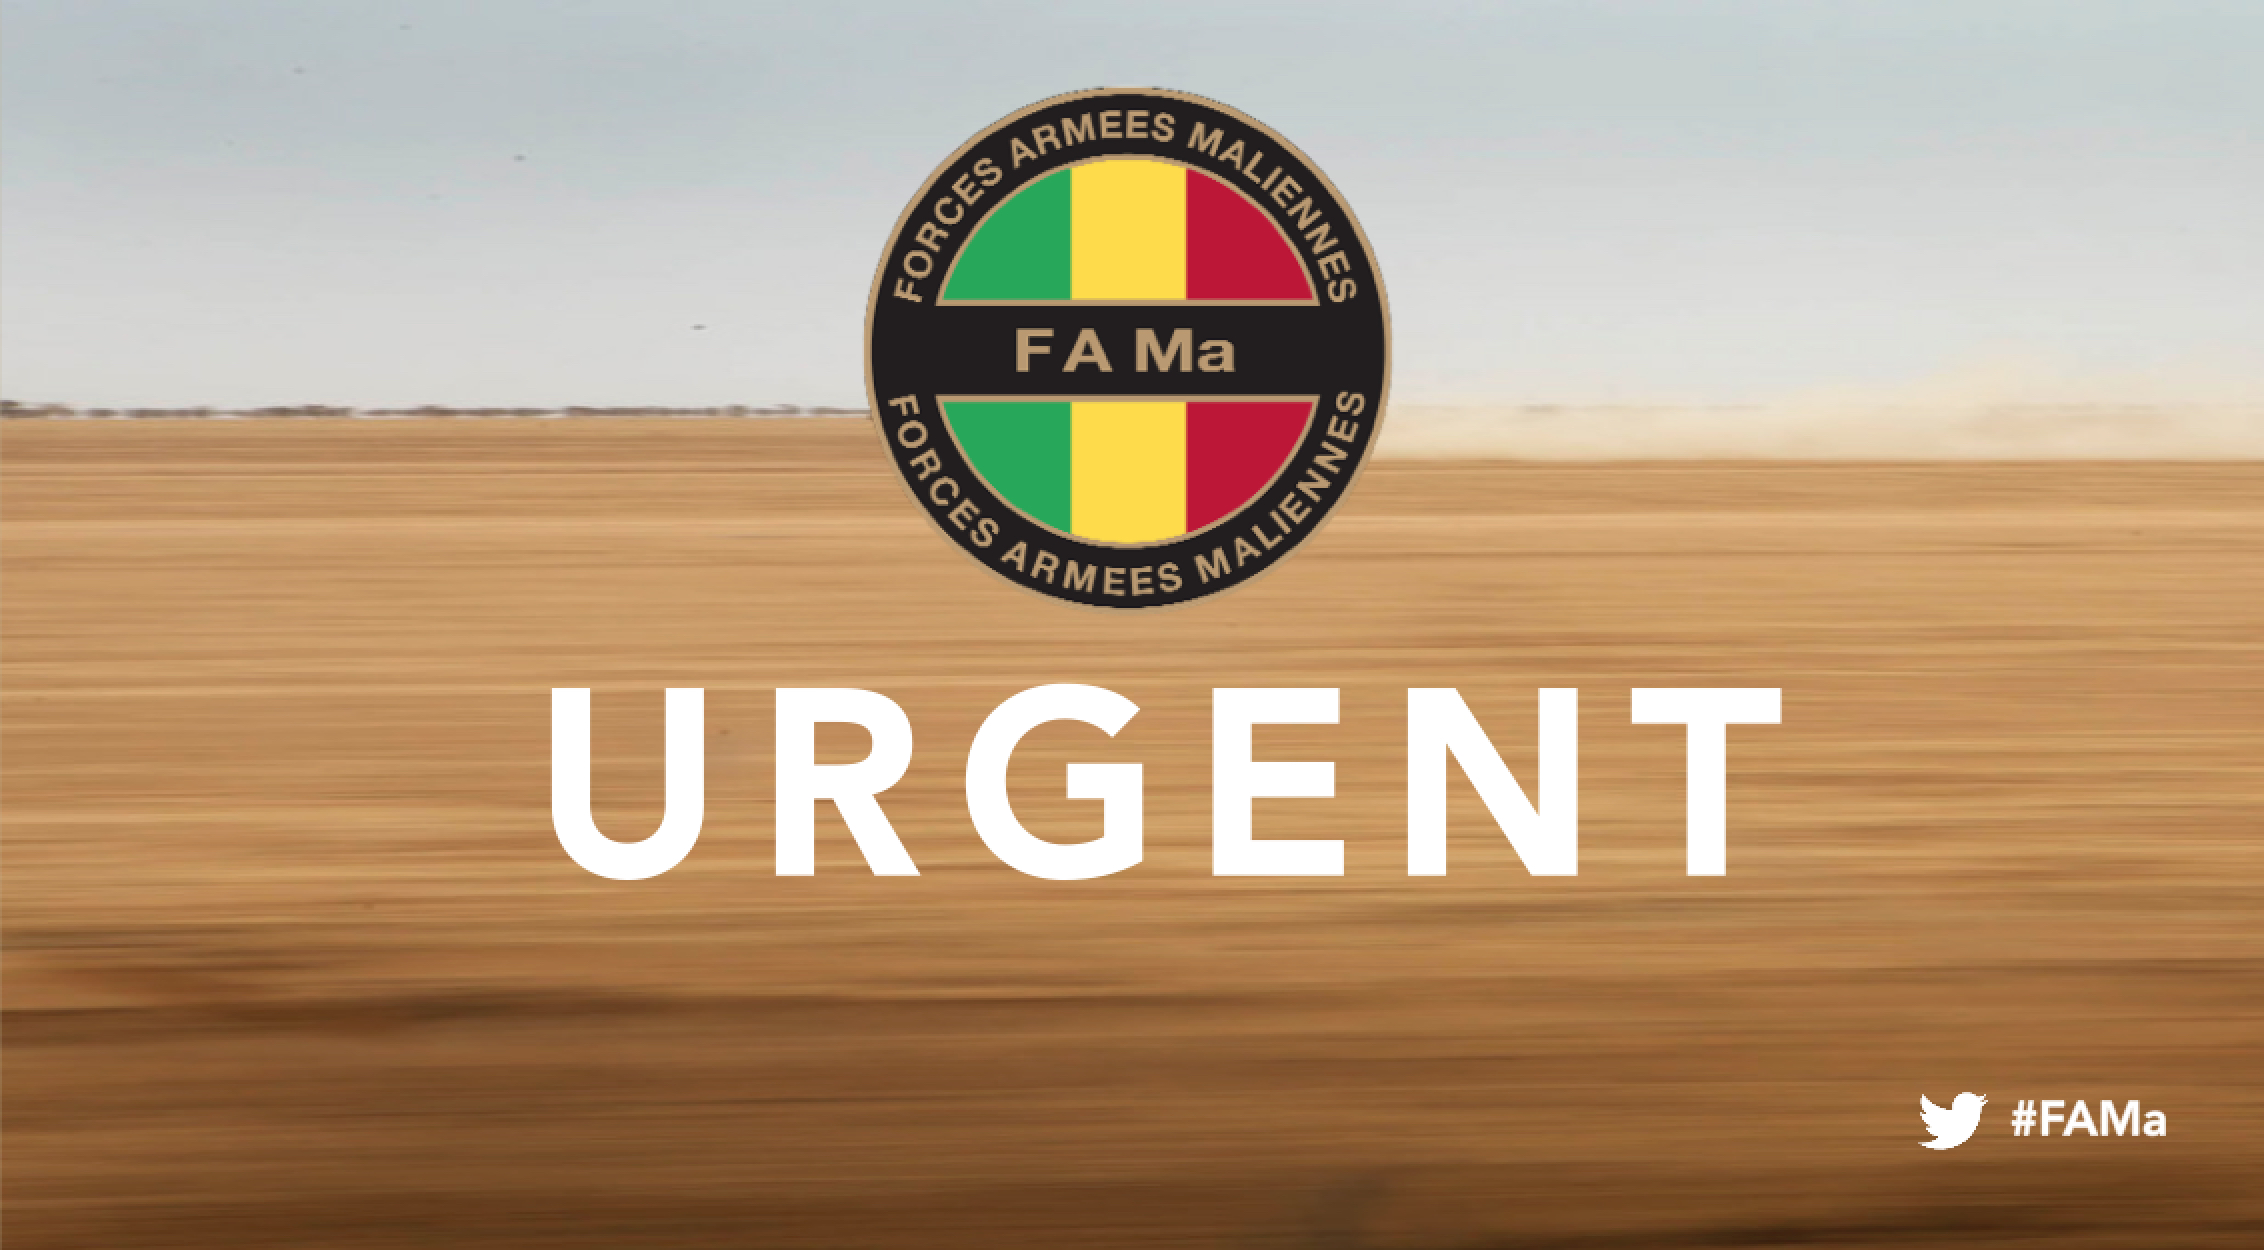 Urgent!